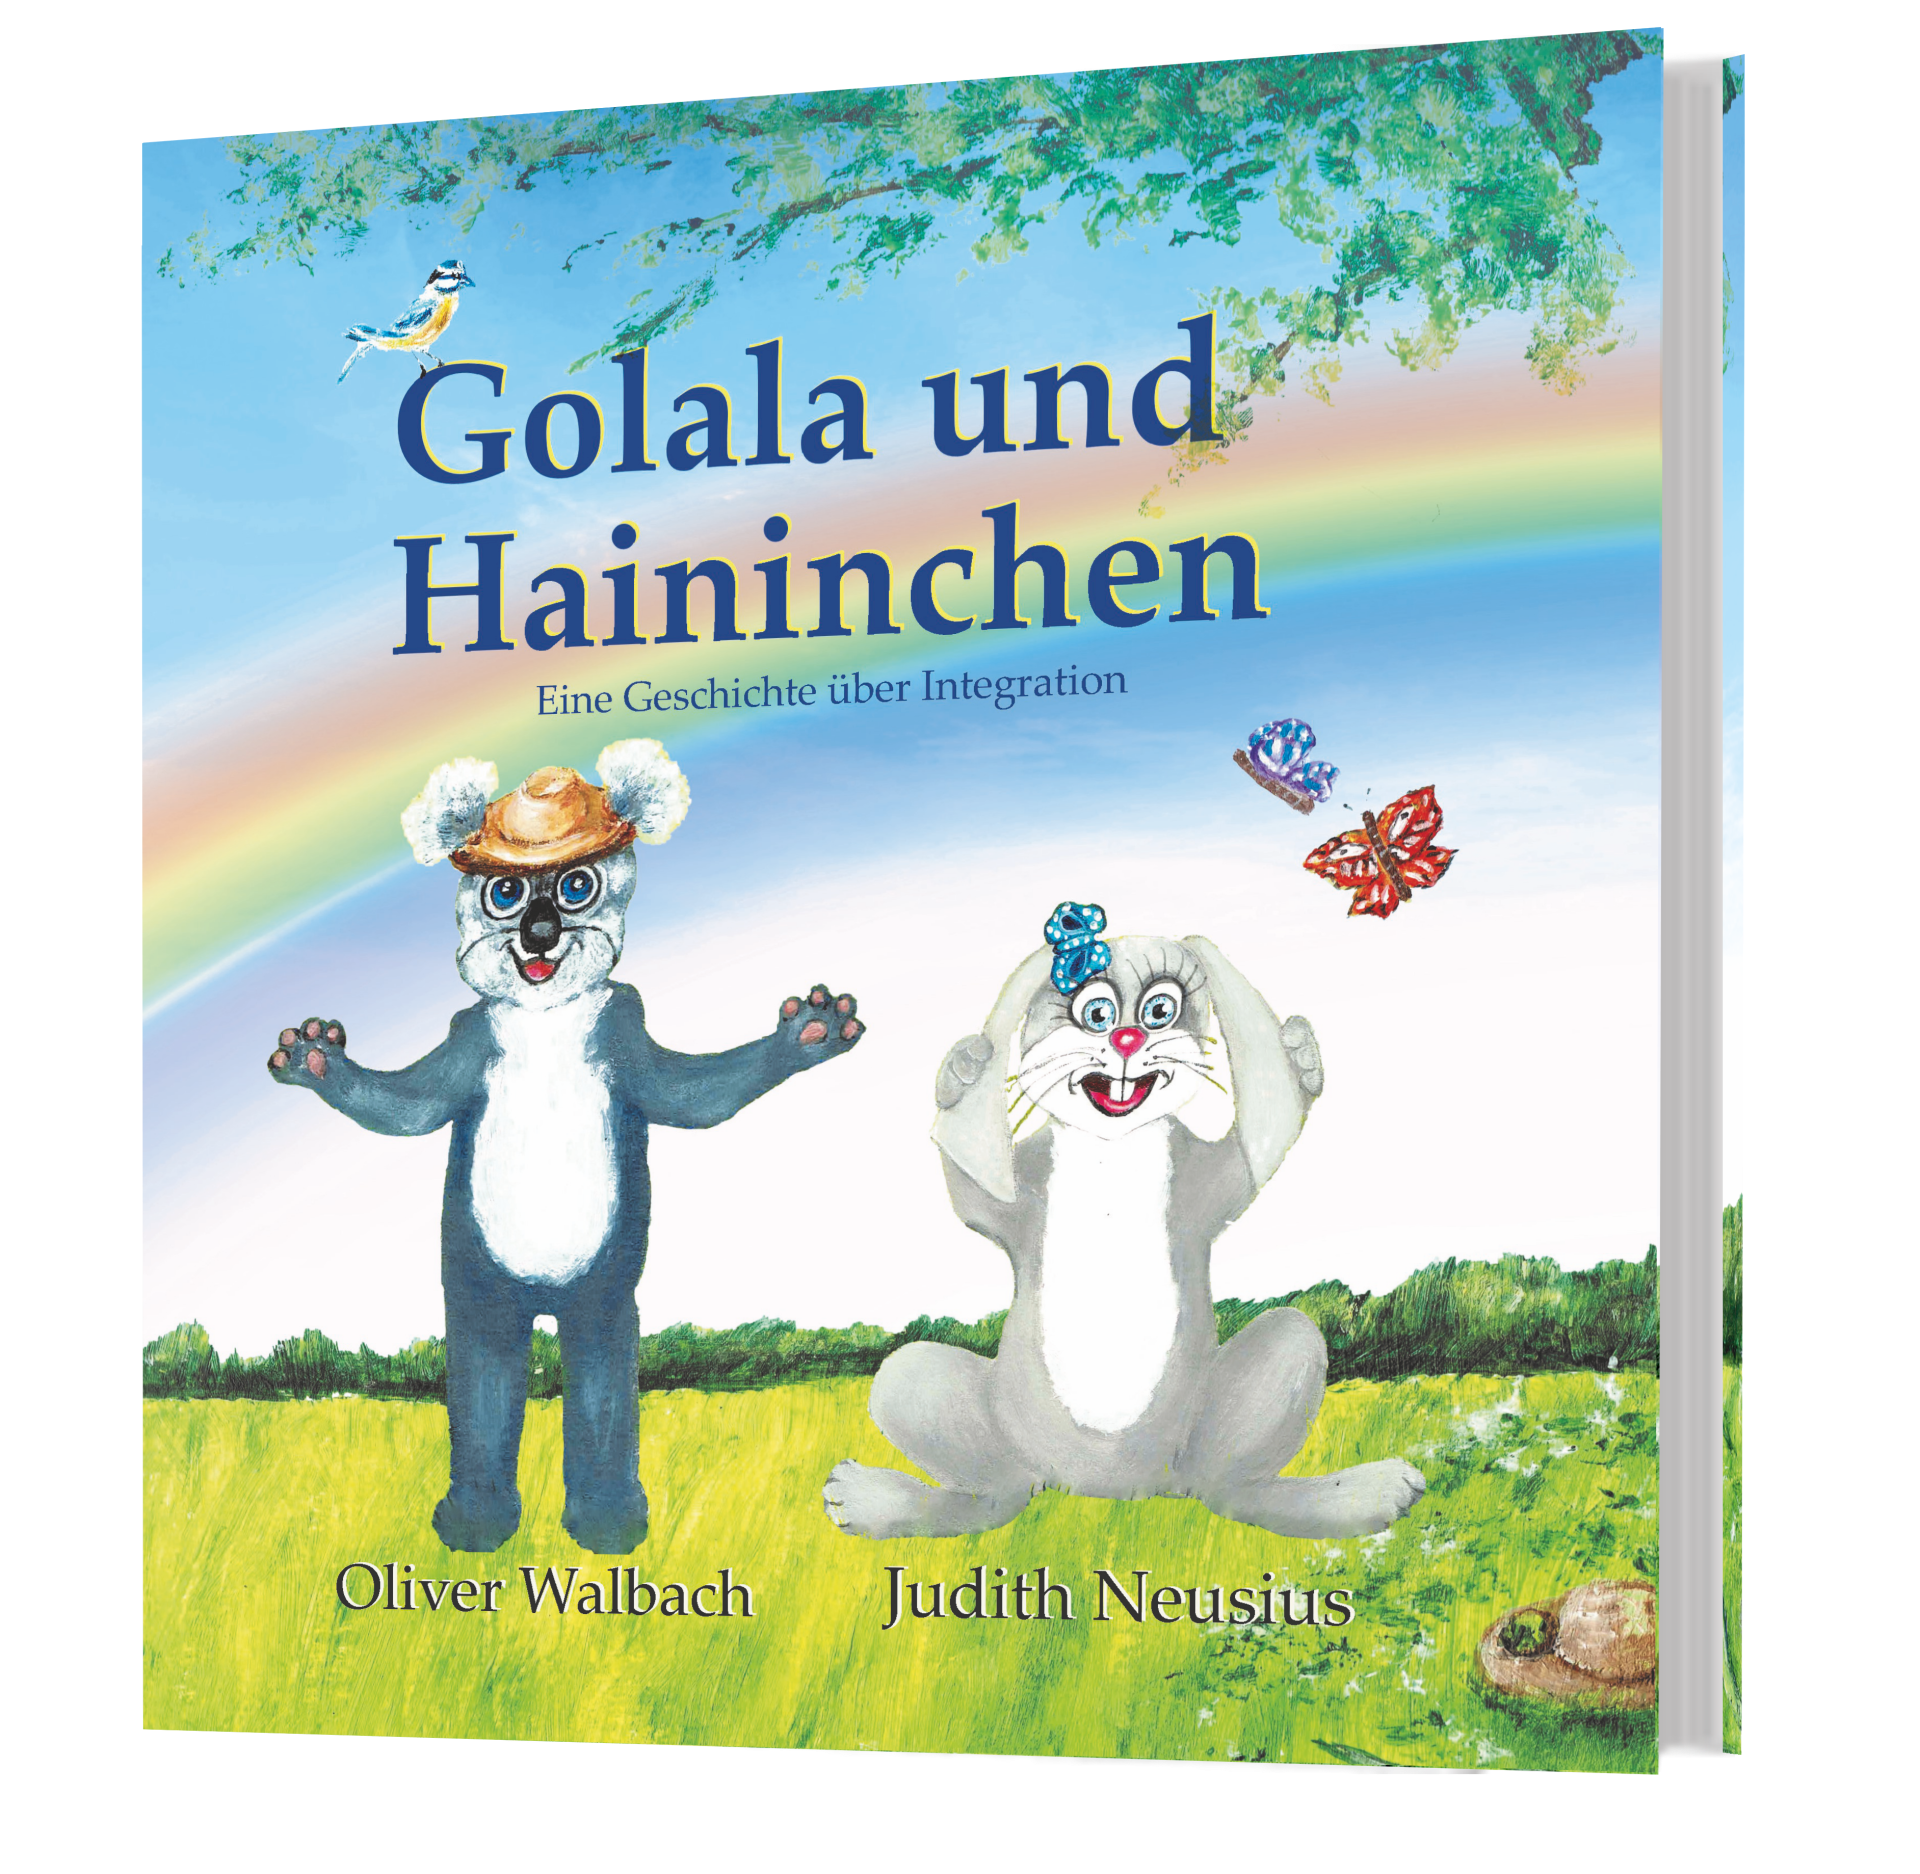 Kinderbuch Bilderbuch Integration Hase Kaninchen Koala Bär Schmetterling Regenbogen Hoffnung